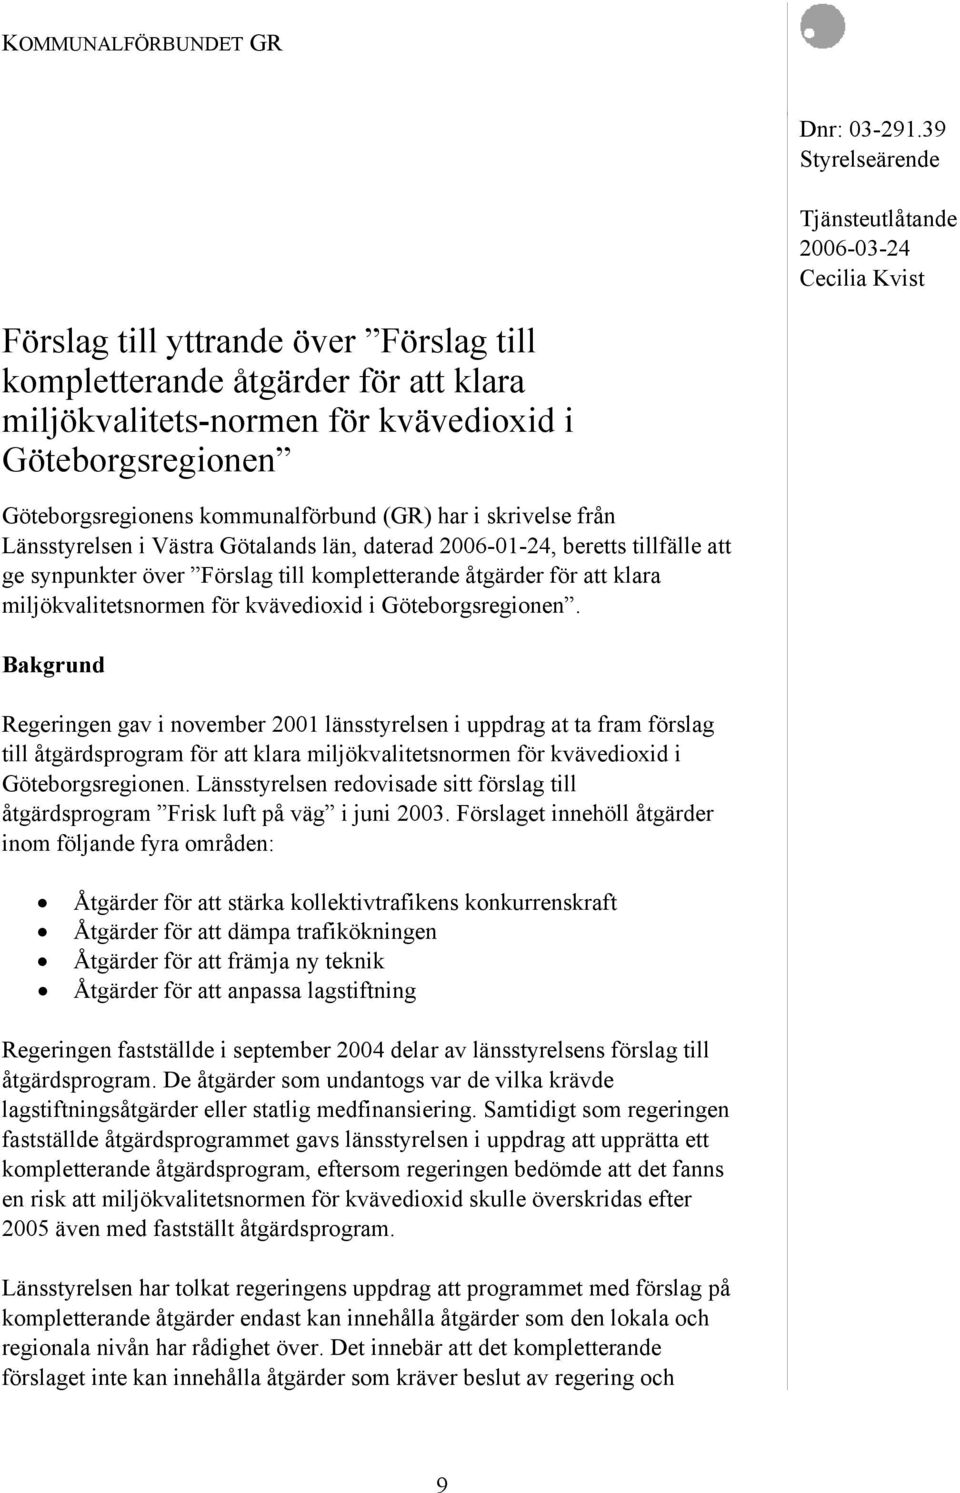 Göteborgsregionens kommunalförbund (GR) har i skrivelse från Länsstyrelsen i Västra Götalands län, daterad 2006-01-24, beretts tillfälle att ge synpunkter över Förslag till kompletterande åtgärder